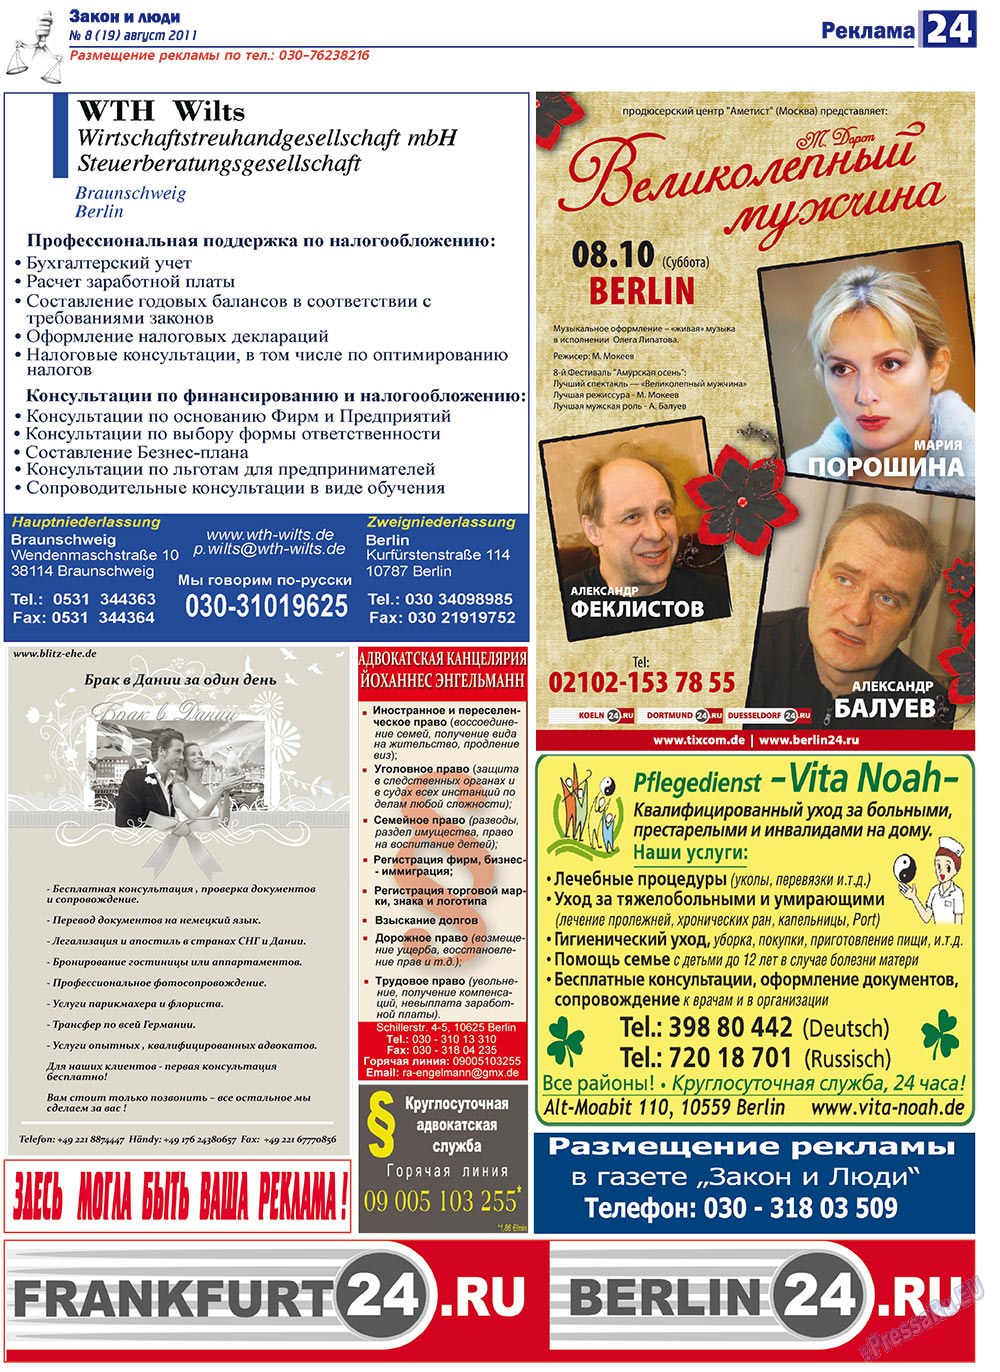 Закон и люди, газета. 2011 №8 стр.24